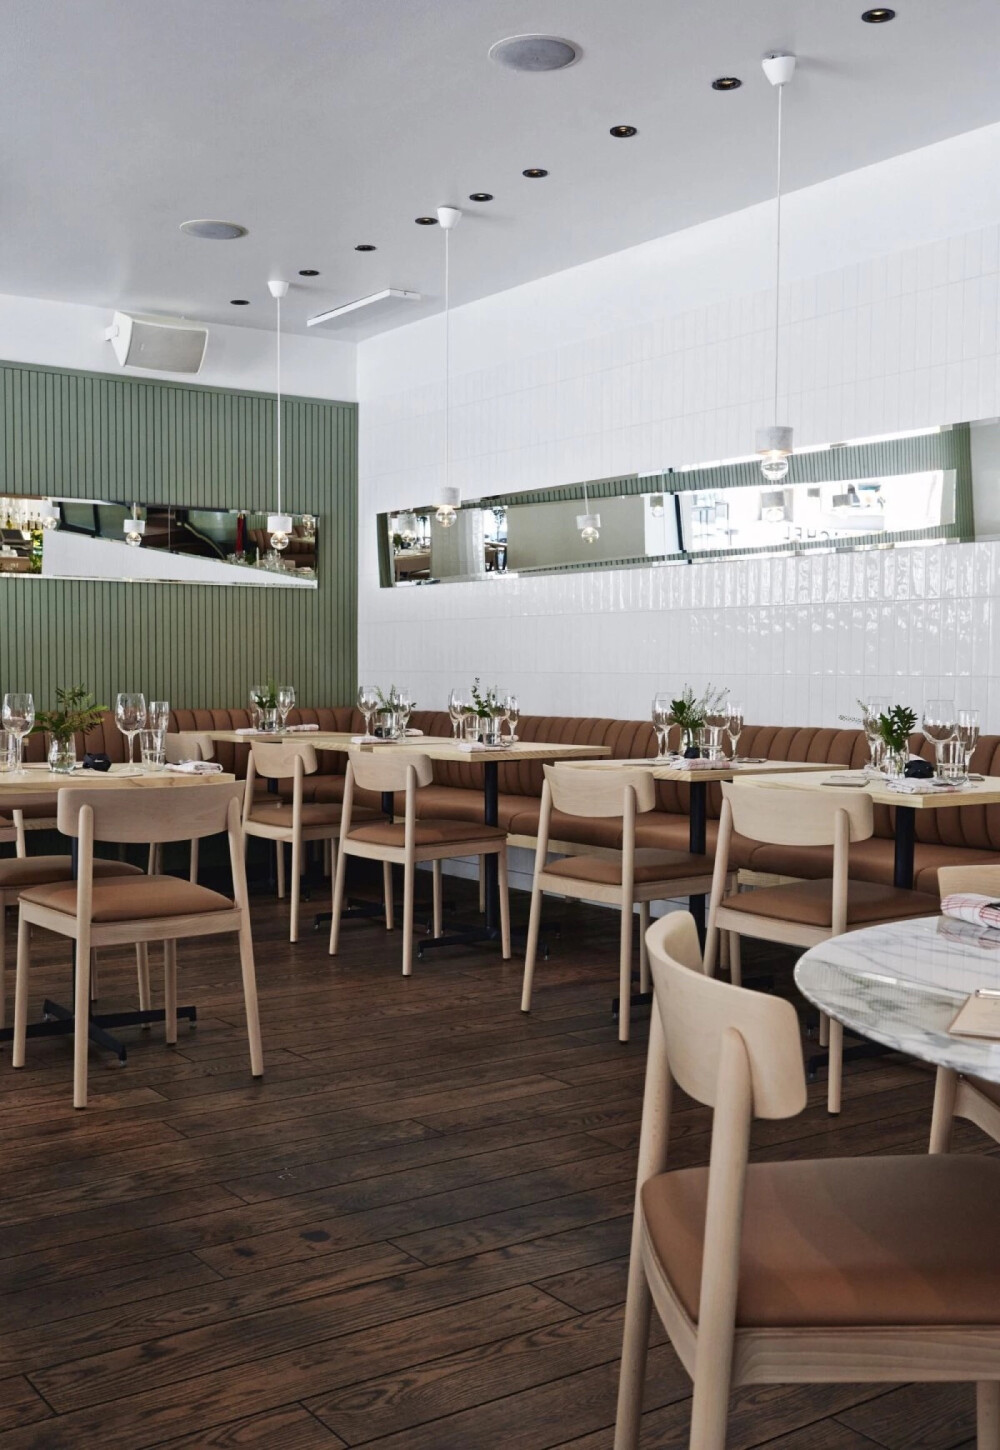 餐厅
大理石纹与薄荷绿的搭配
淡雅清新